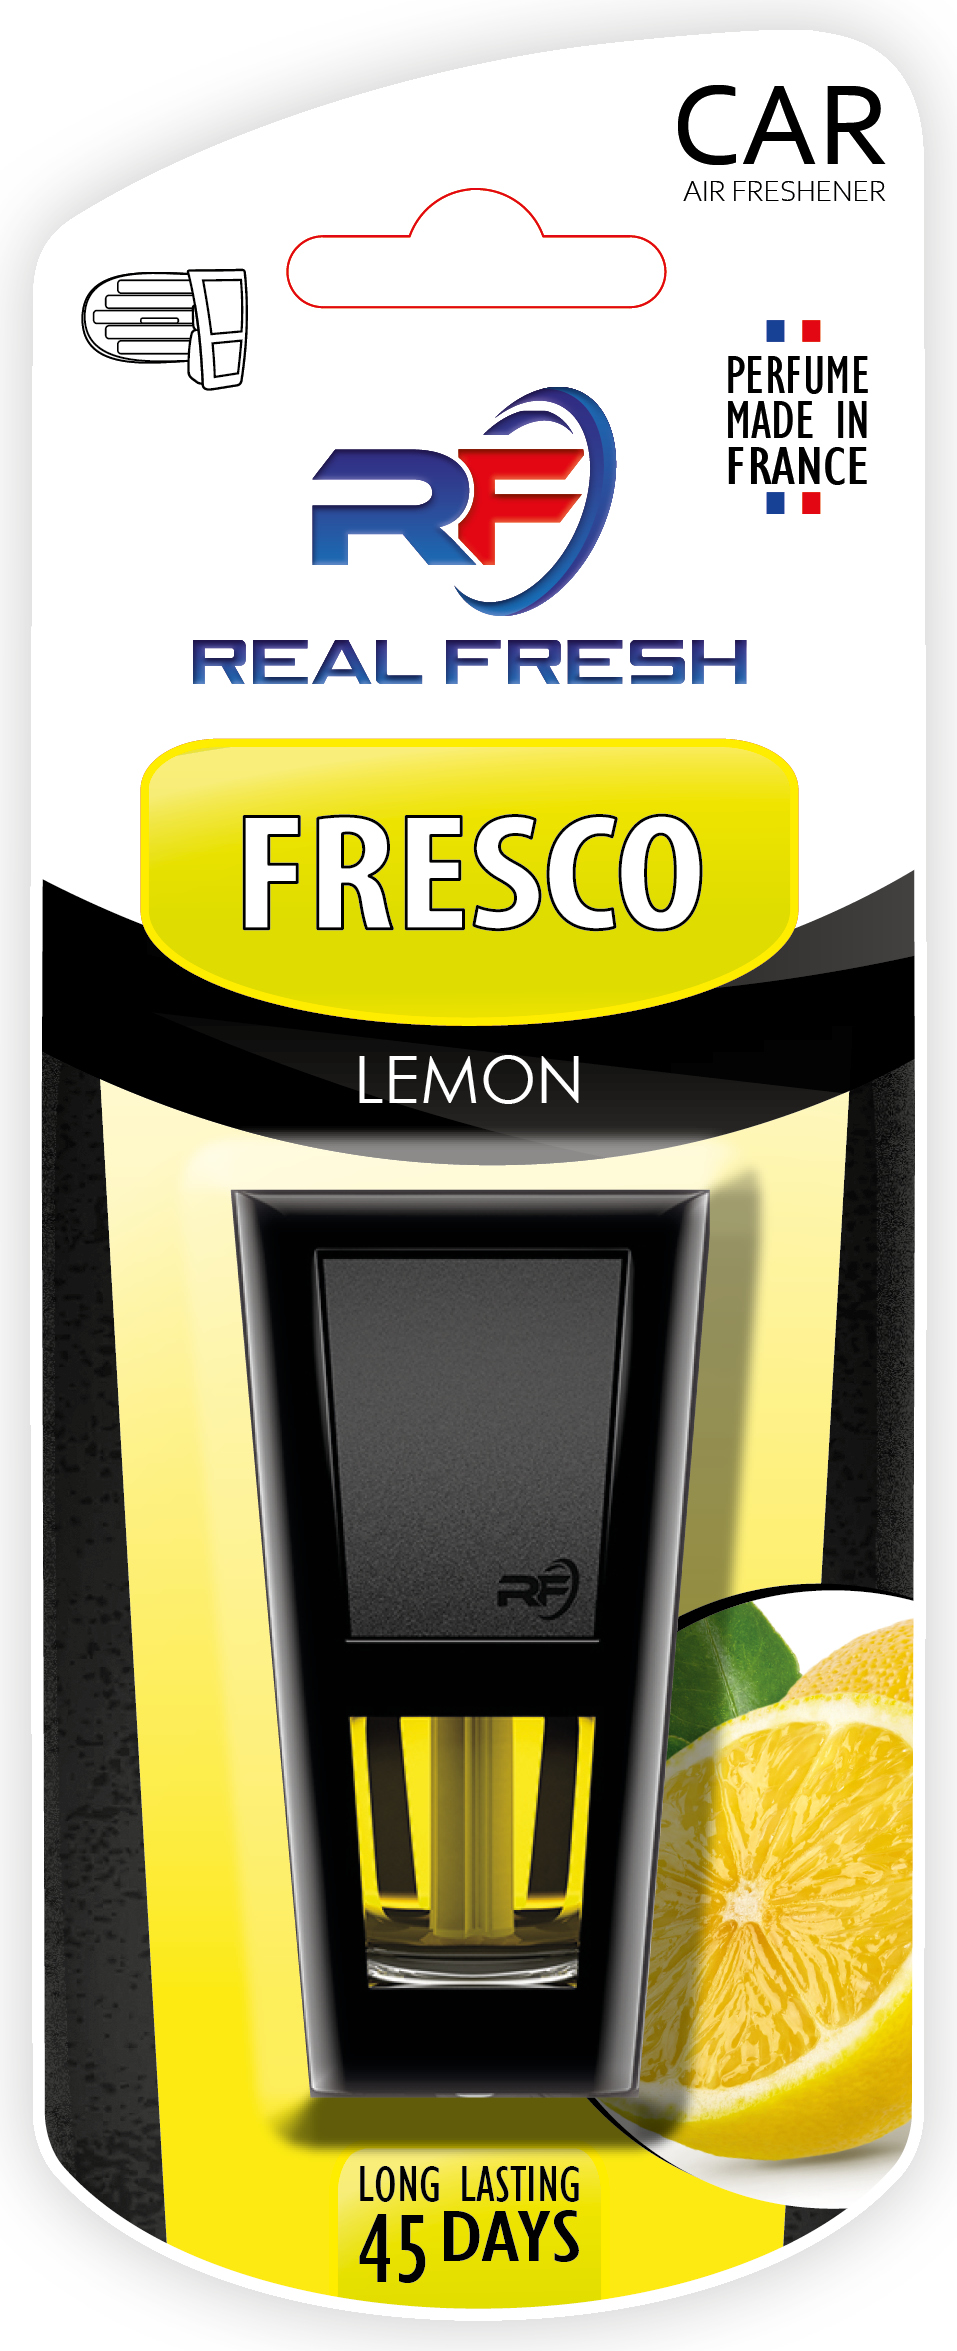 Fresco Lemon Image